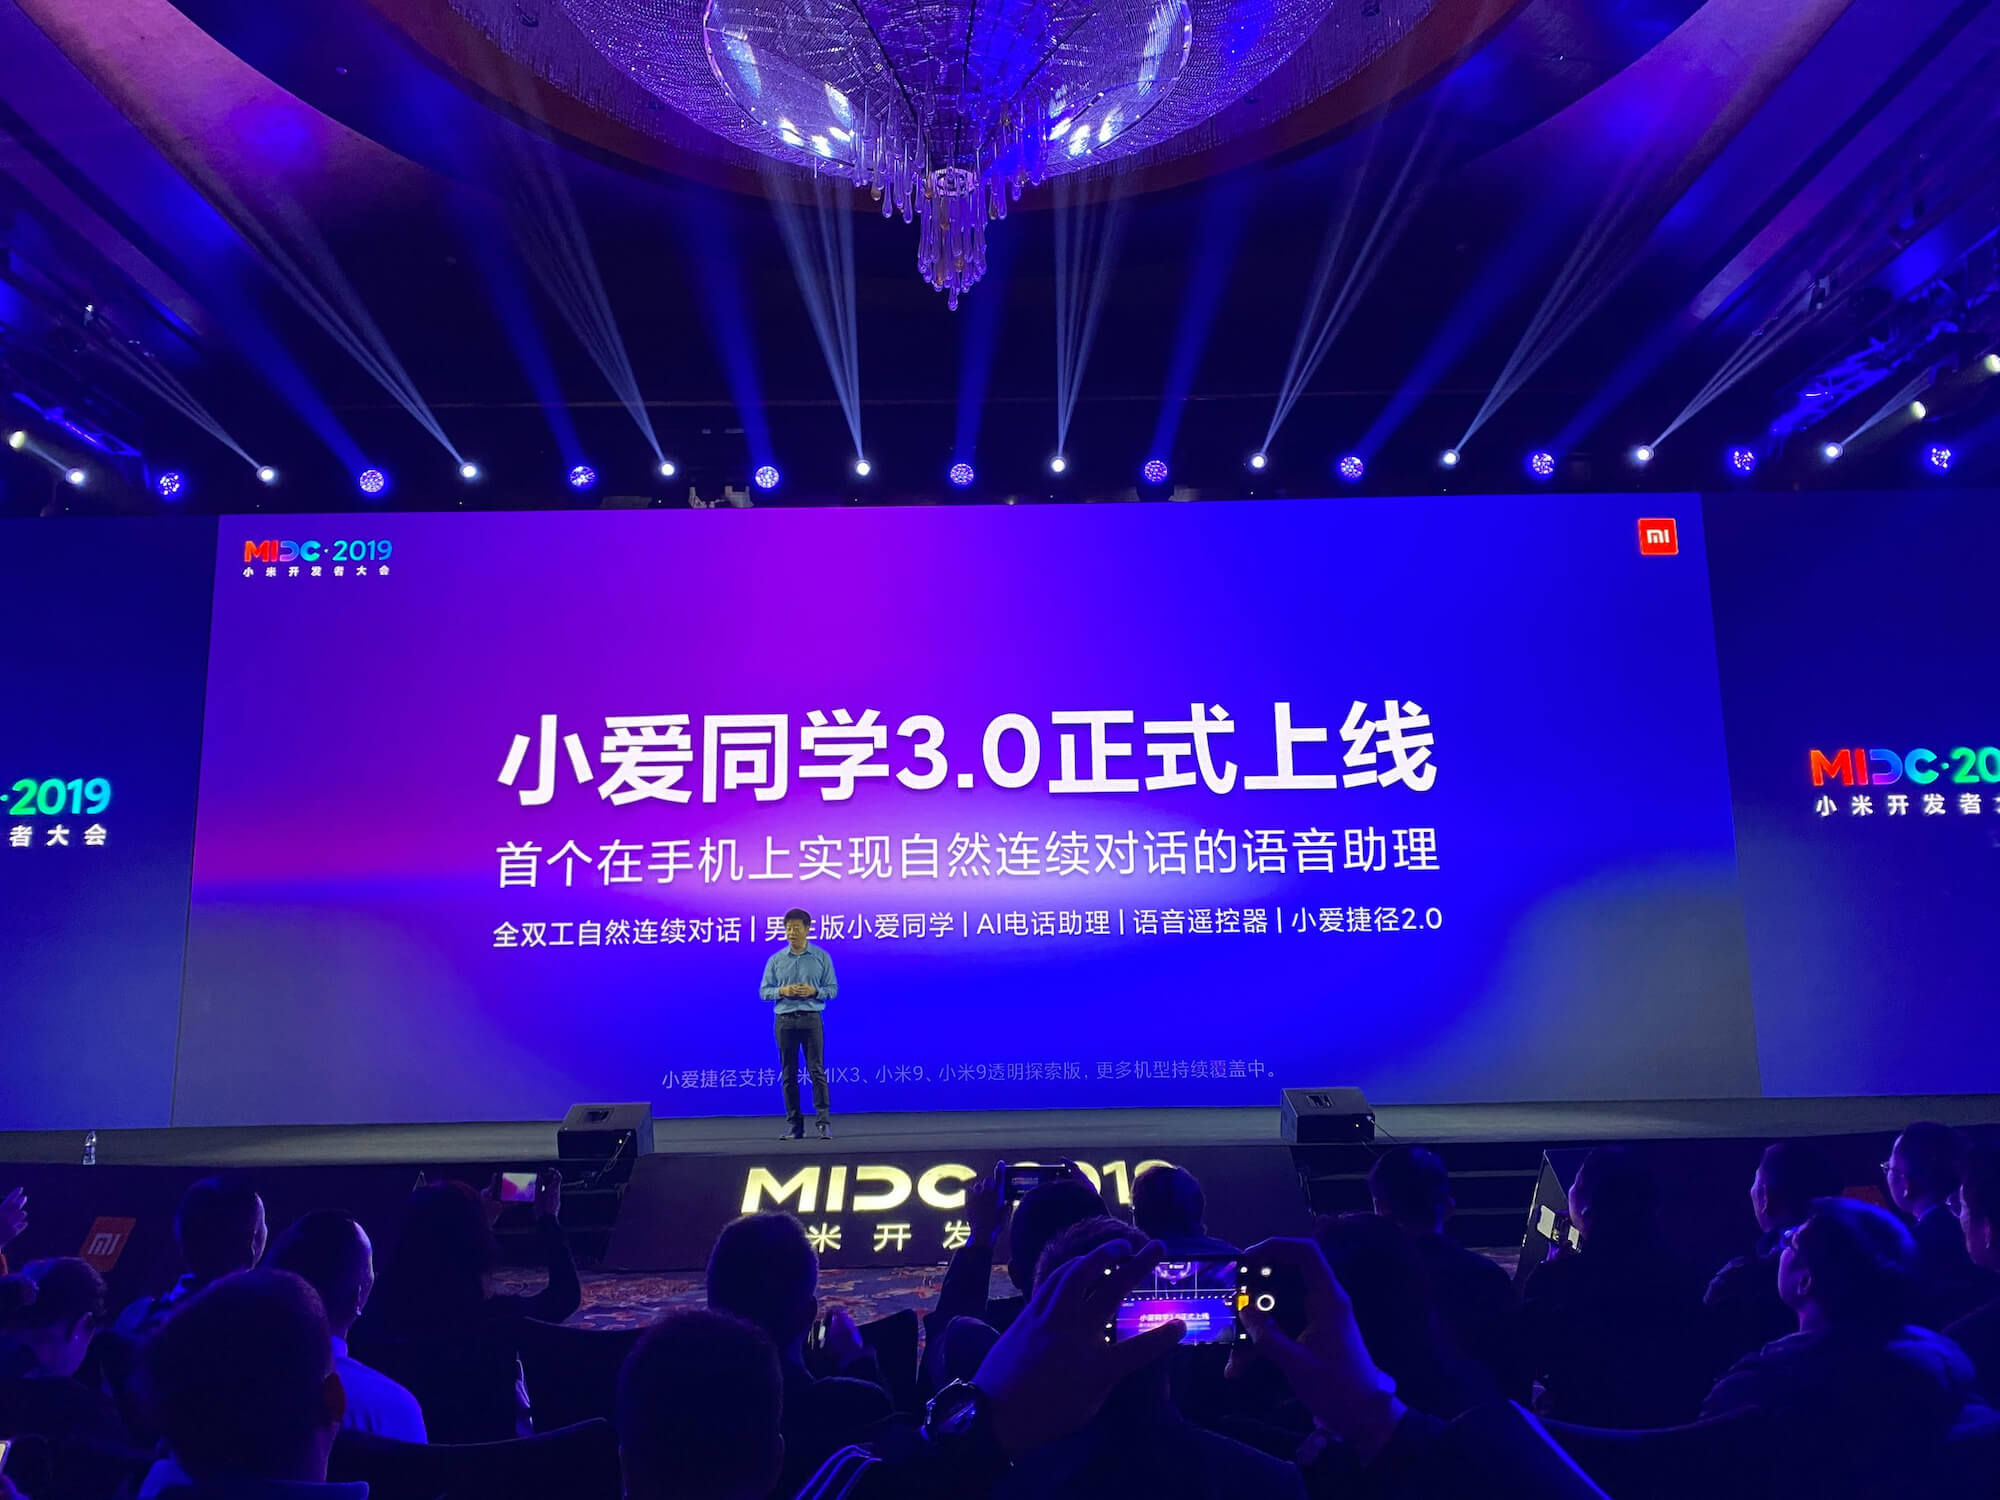 XiaoAI 3.0